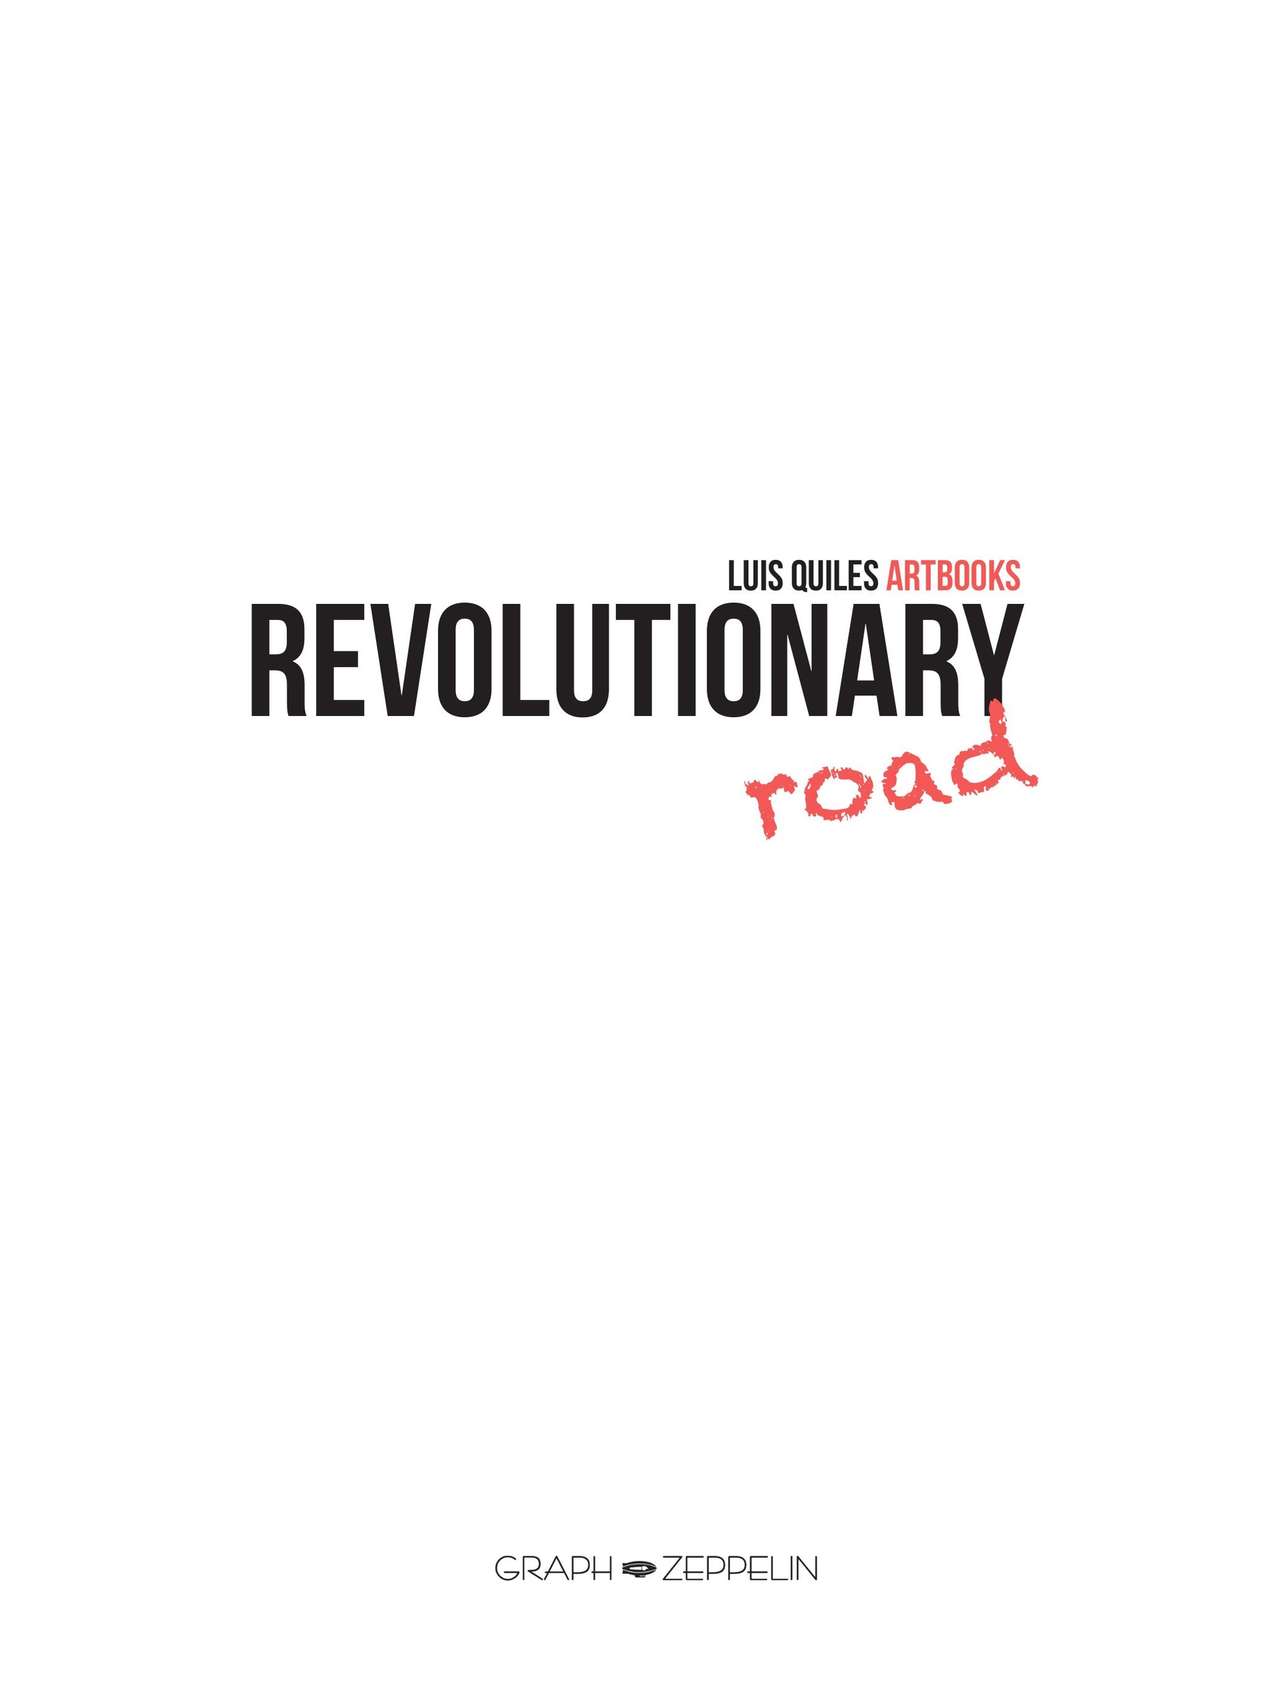 Revolutionary Road - Lart subversif de Luis Quiles numero d'image 2